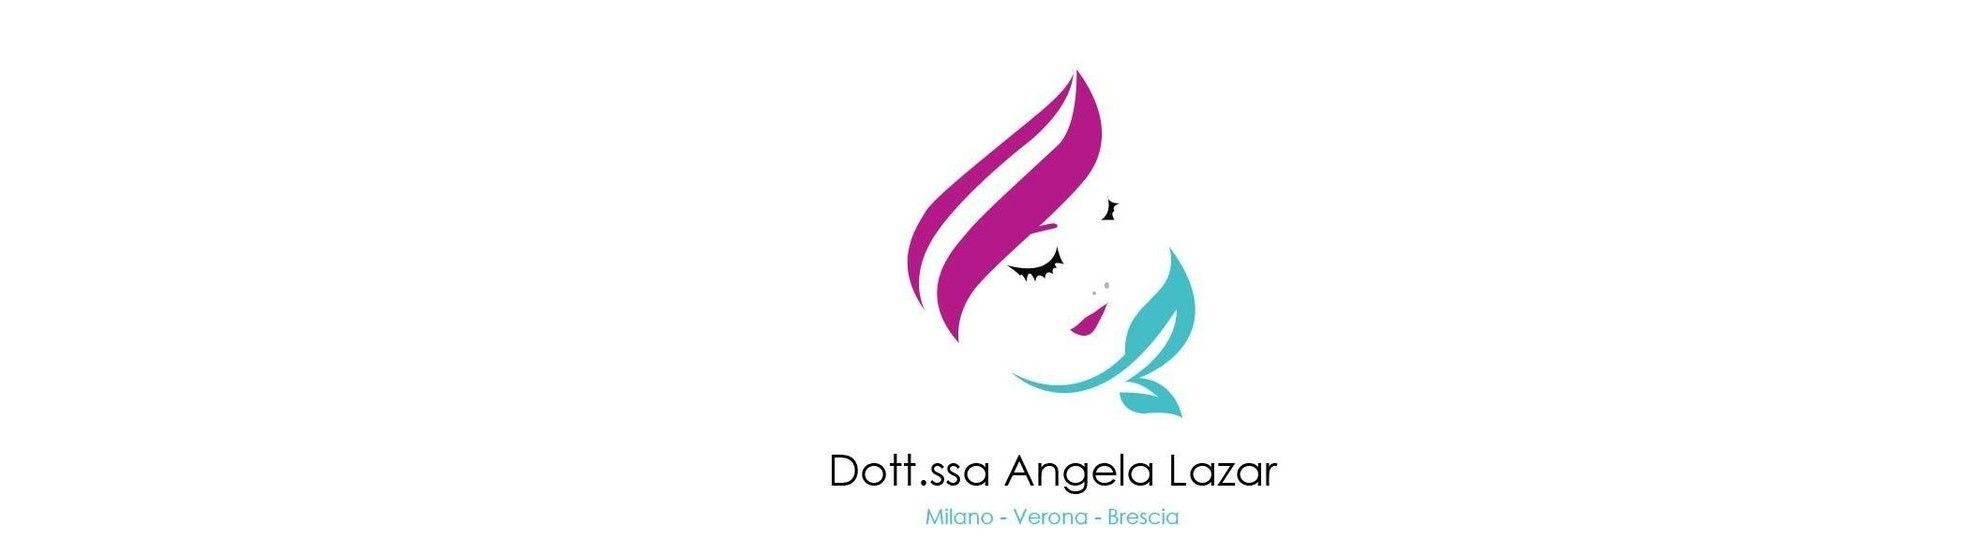 Dott.ssa Angela Lazar